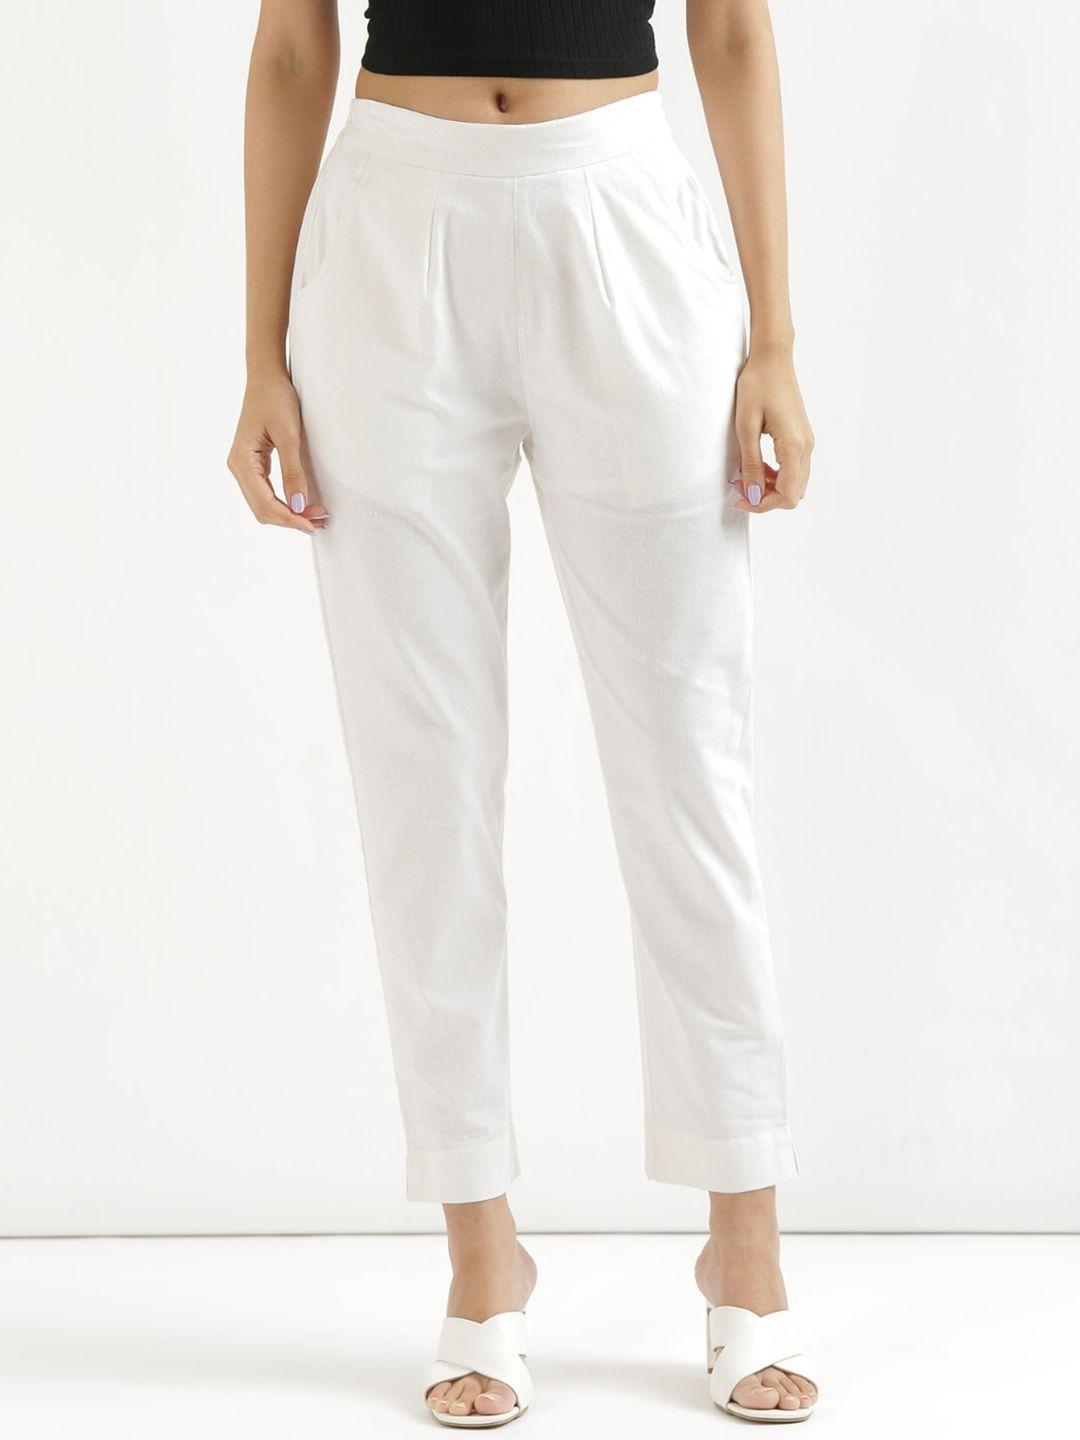 saadaa-women-mid-rise-cotton-trousers